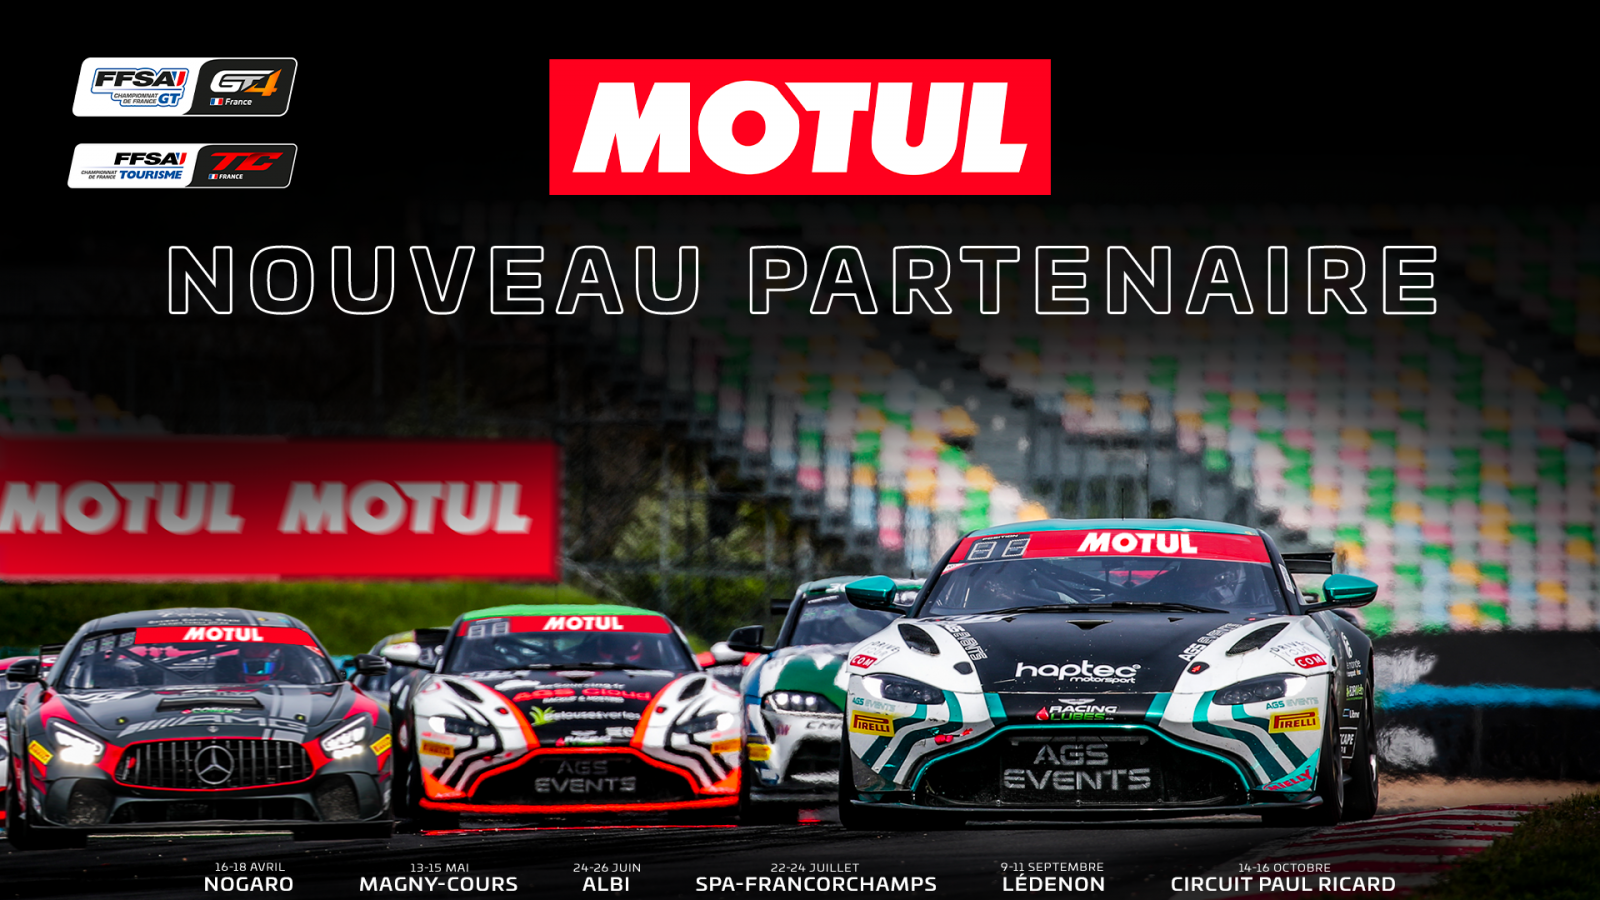 Motul, partenaire du Championnat de France FFSA GT et FFSA Tourisme en 2022